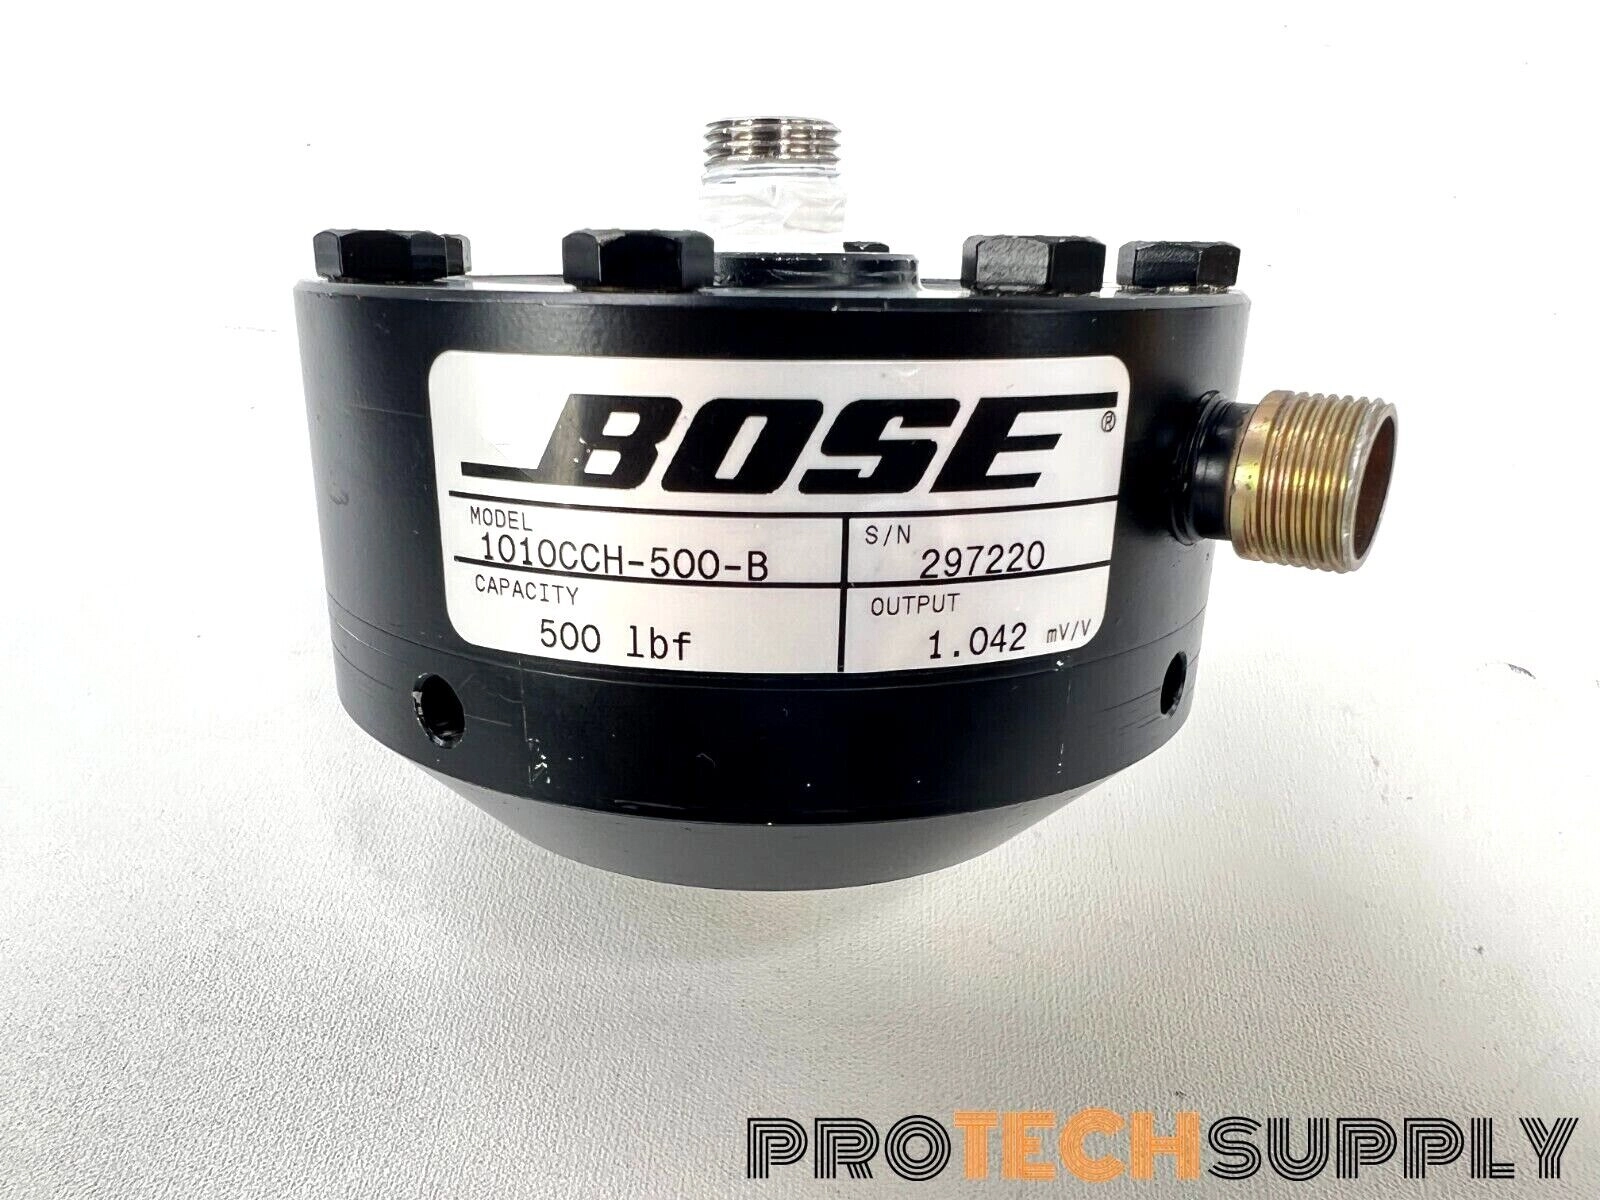 Bose 1010CCH-500-B Encoder 500lbf 1.042mV/V with W